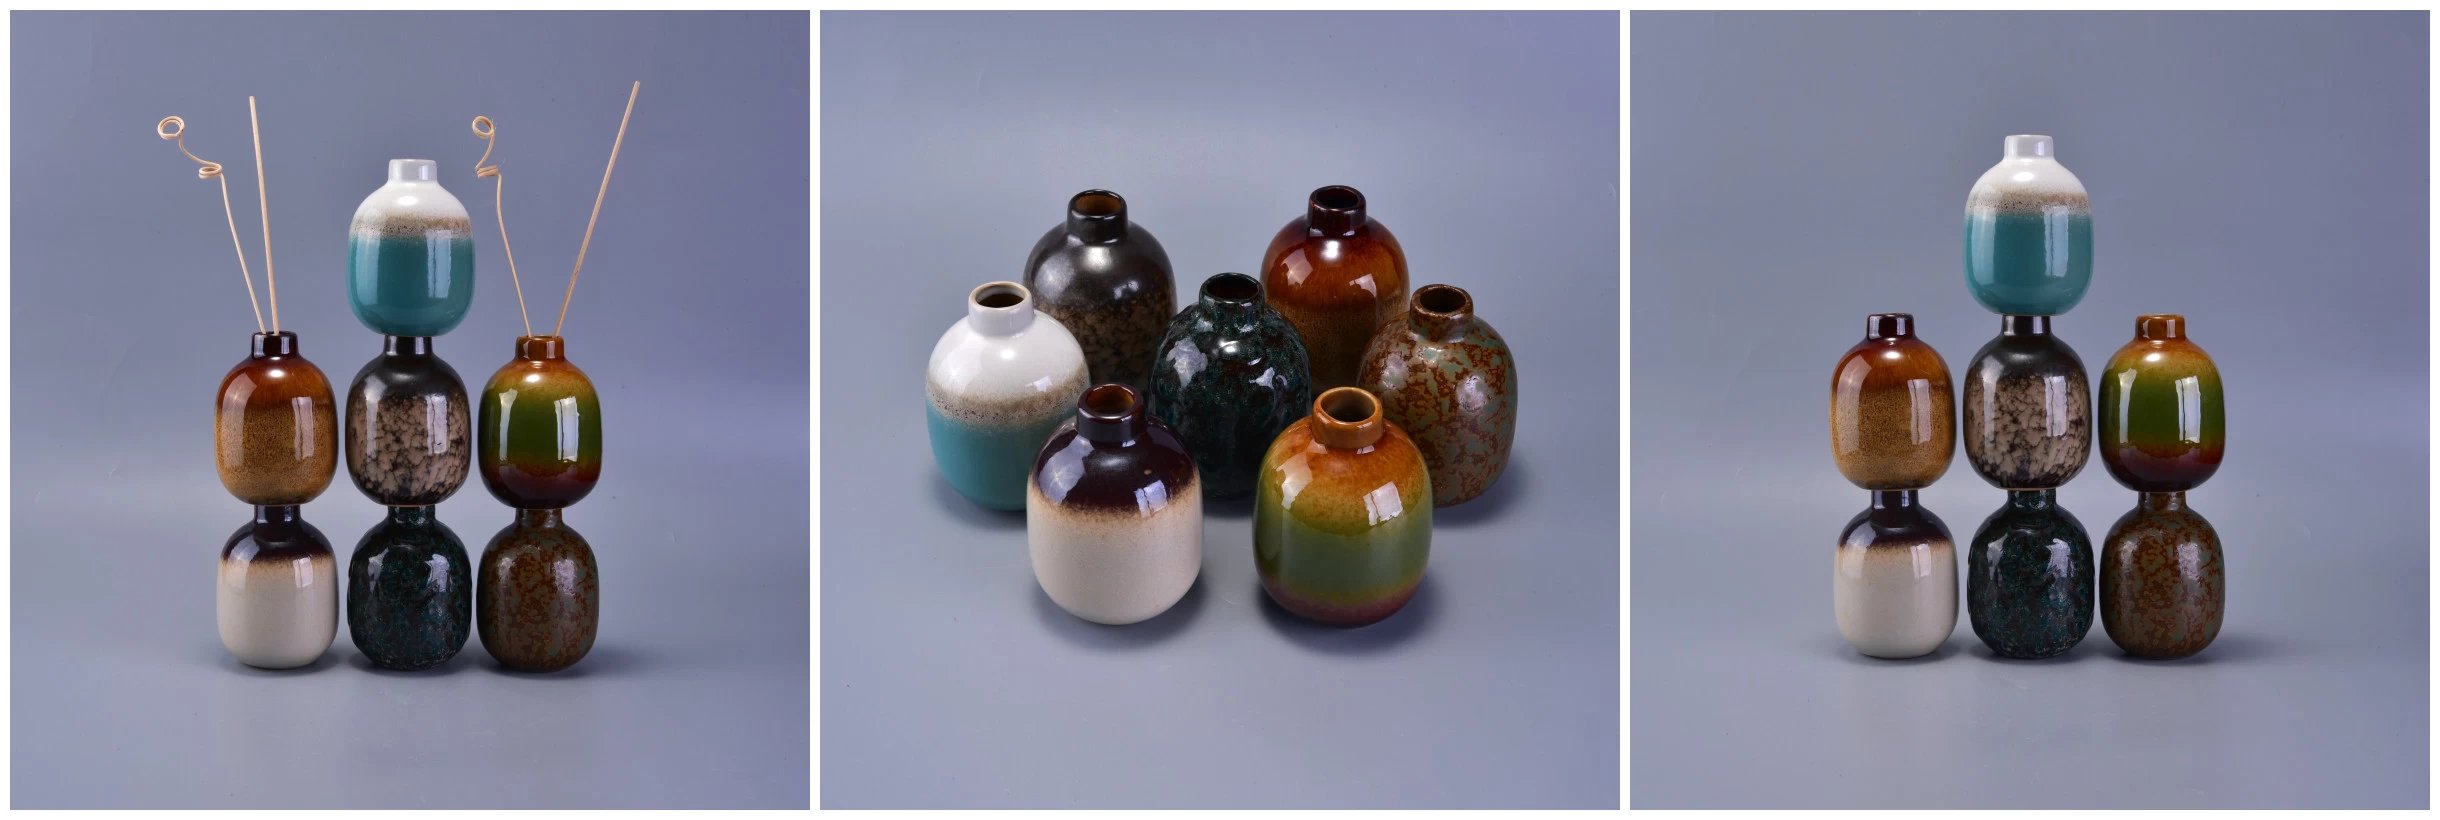 ceramic bottles for fragrance